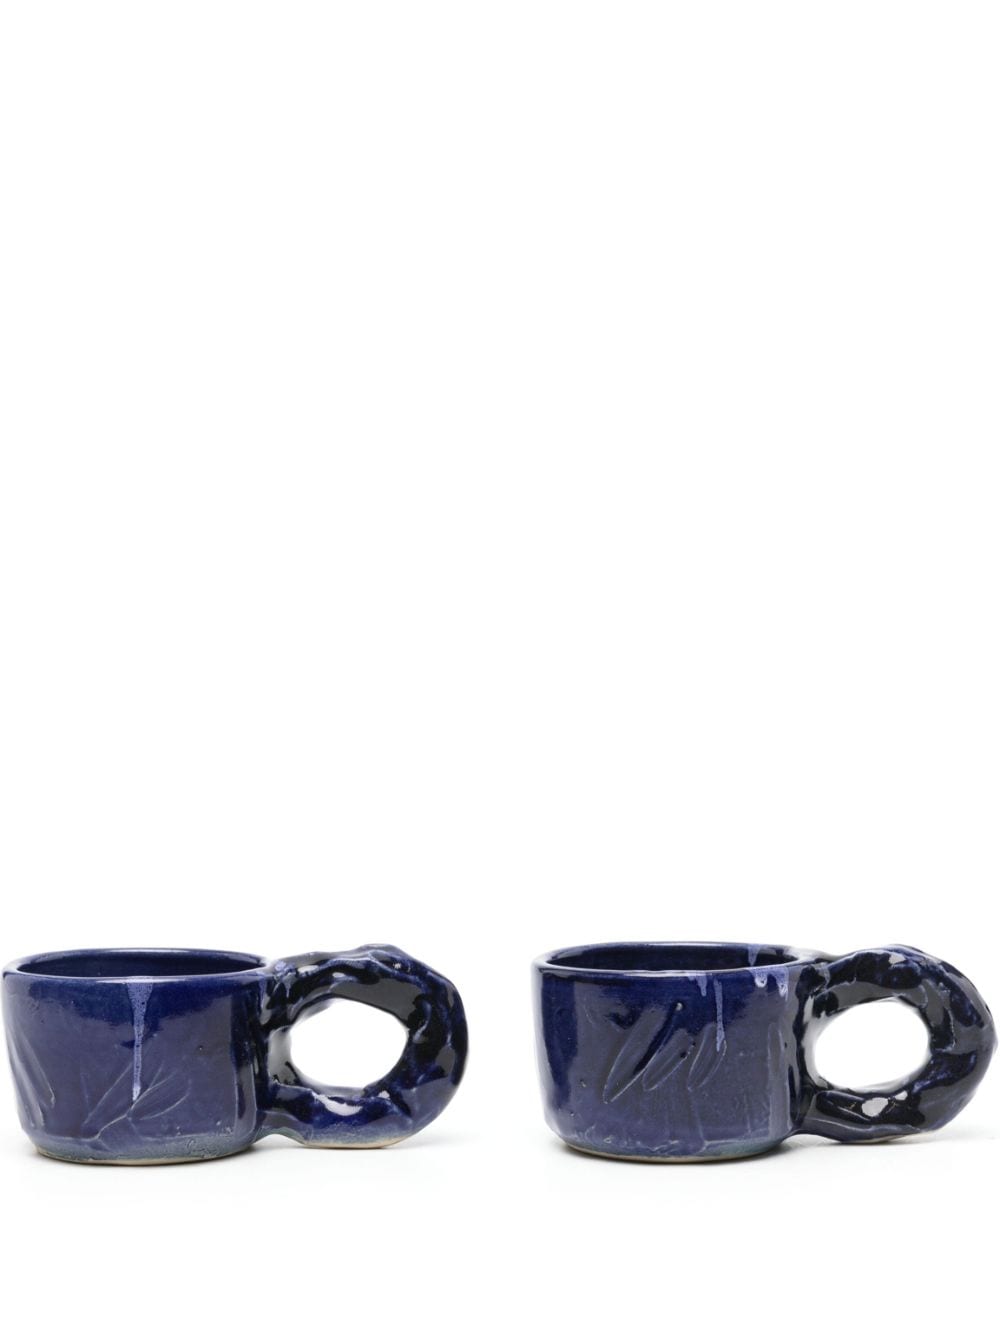 NIKO JUNE Studio ceramic cups (set of two) - Blue von NIKO JUNE